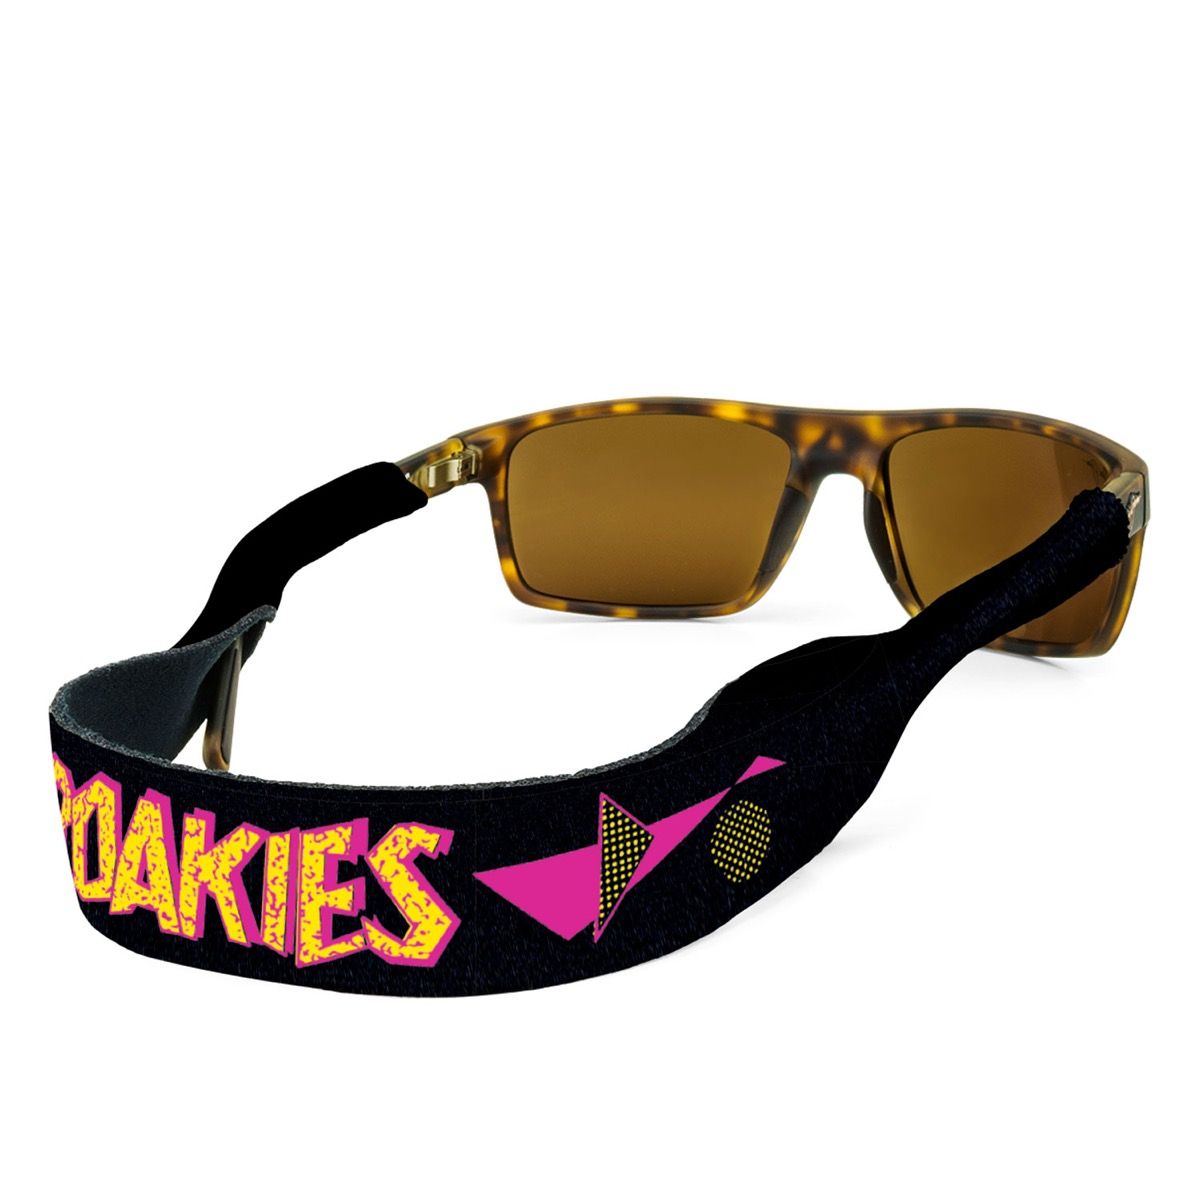 Porta gafas de sol Croakies moda de los años 80